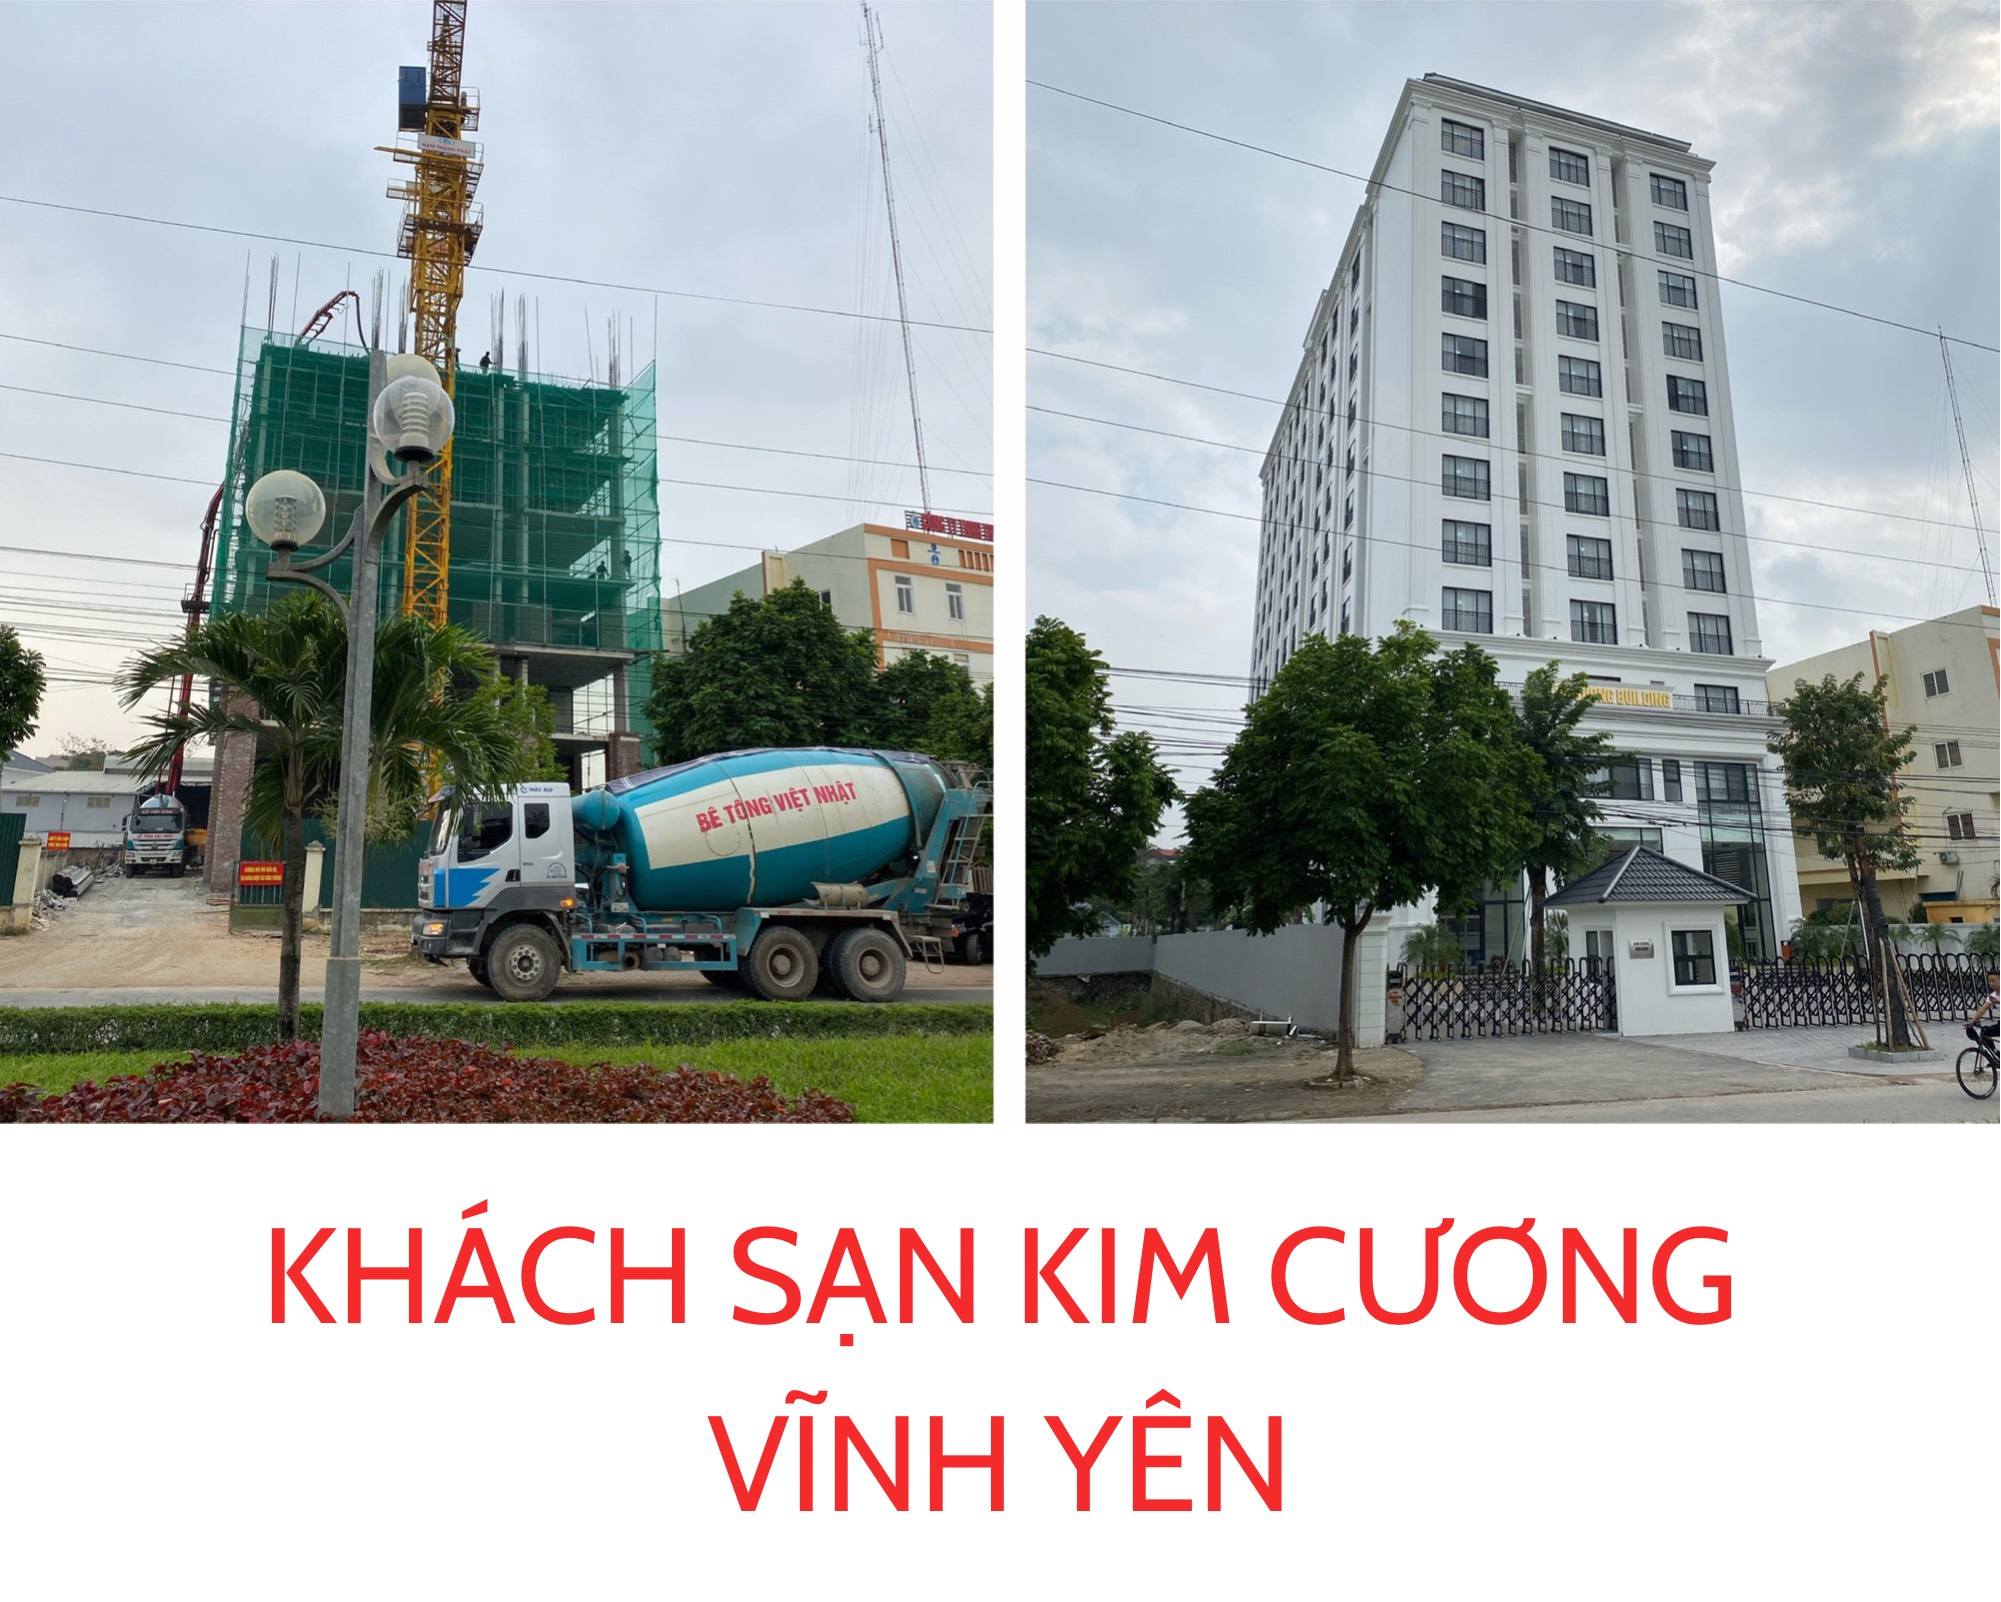 Cong Trinh Khach San Kim Cuong